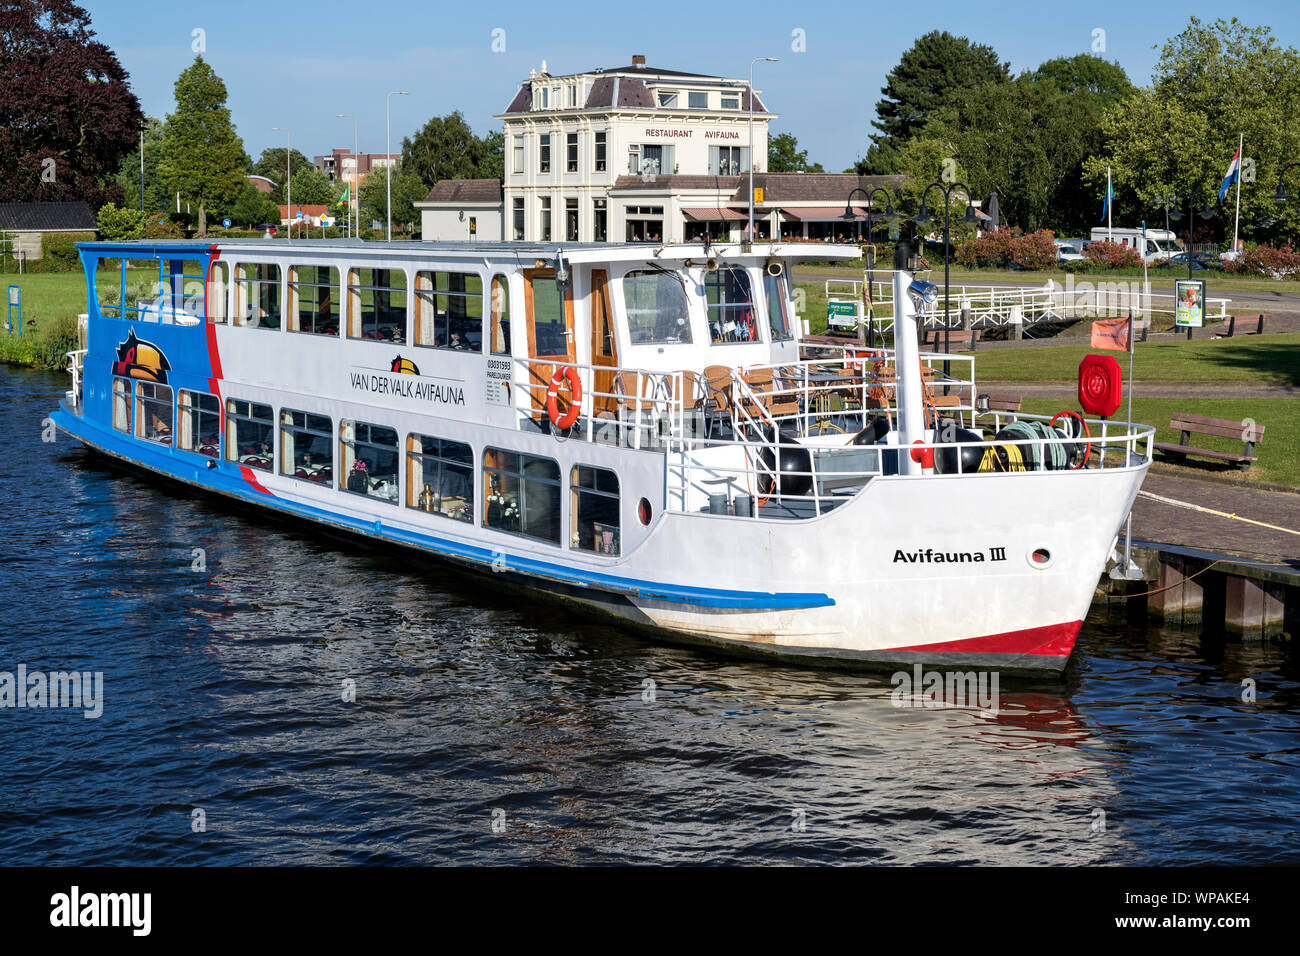 Ausflugsschiff AVIVAUNA III der Van der Valk. Van der Valk ist der größte niederländische Gastfreundschaft Kette und betreibt auch die Avifauna Vogelpark. Stockfoto